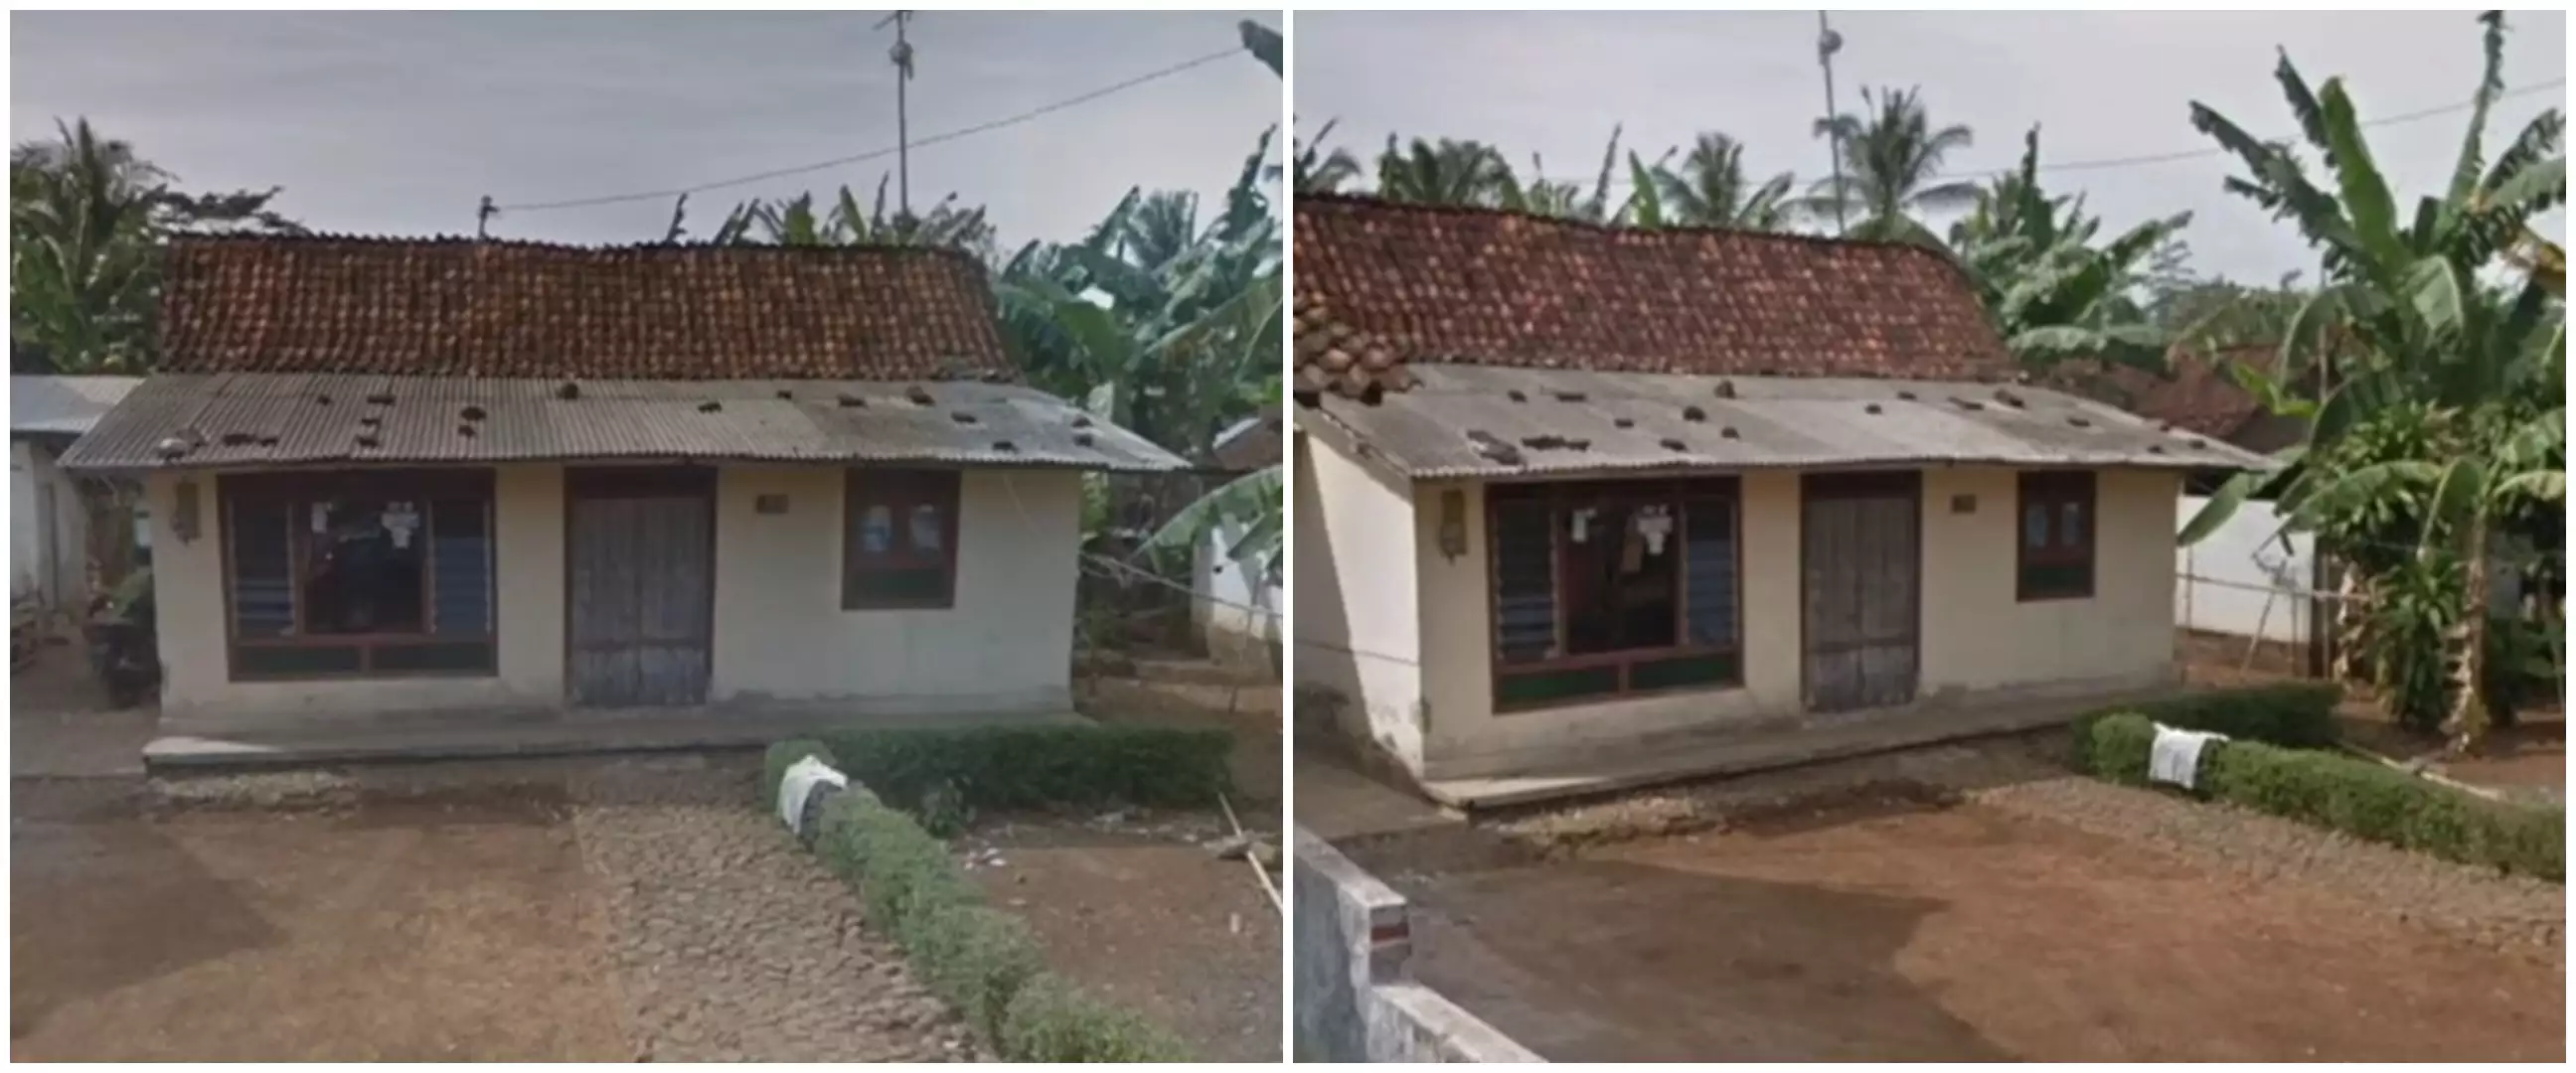 9 Transformasi rumah nenek di kampung usai renovasi, beda banget dari gubuk papan jadi hunian modern